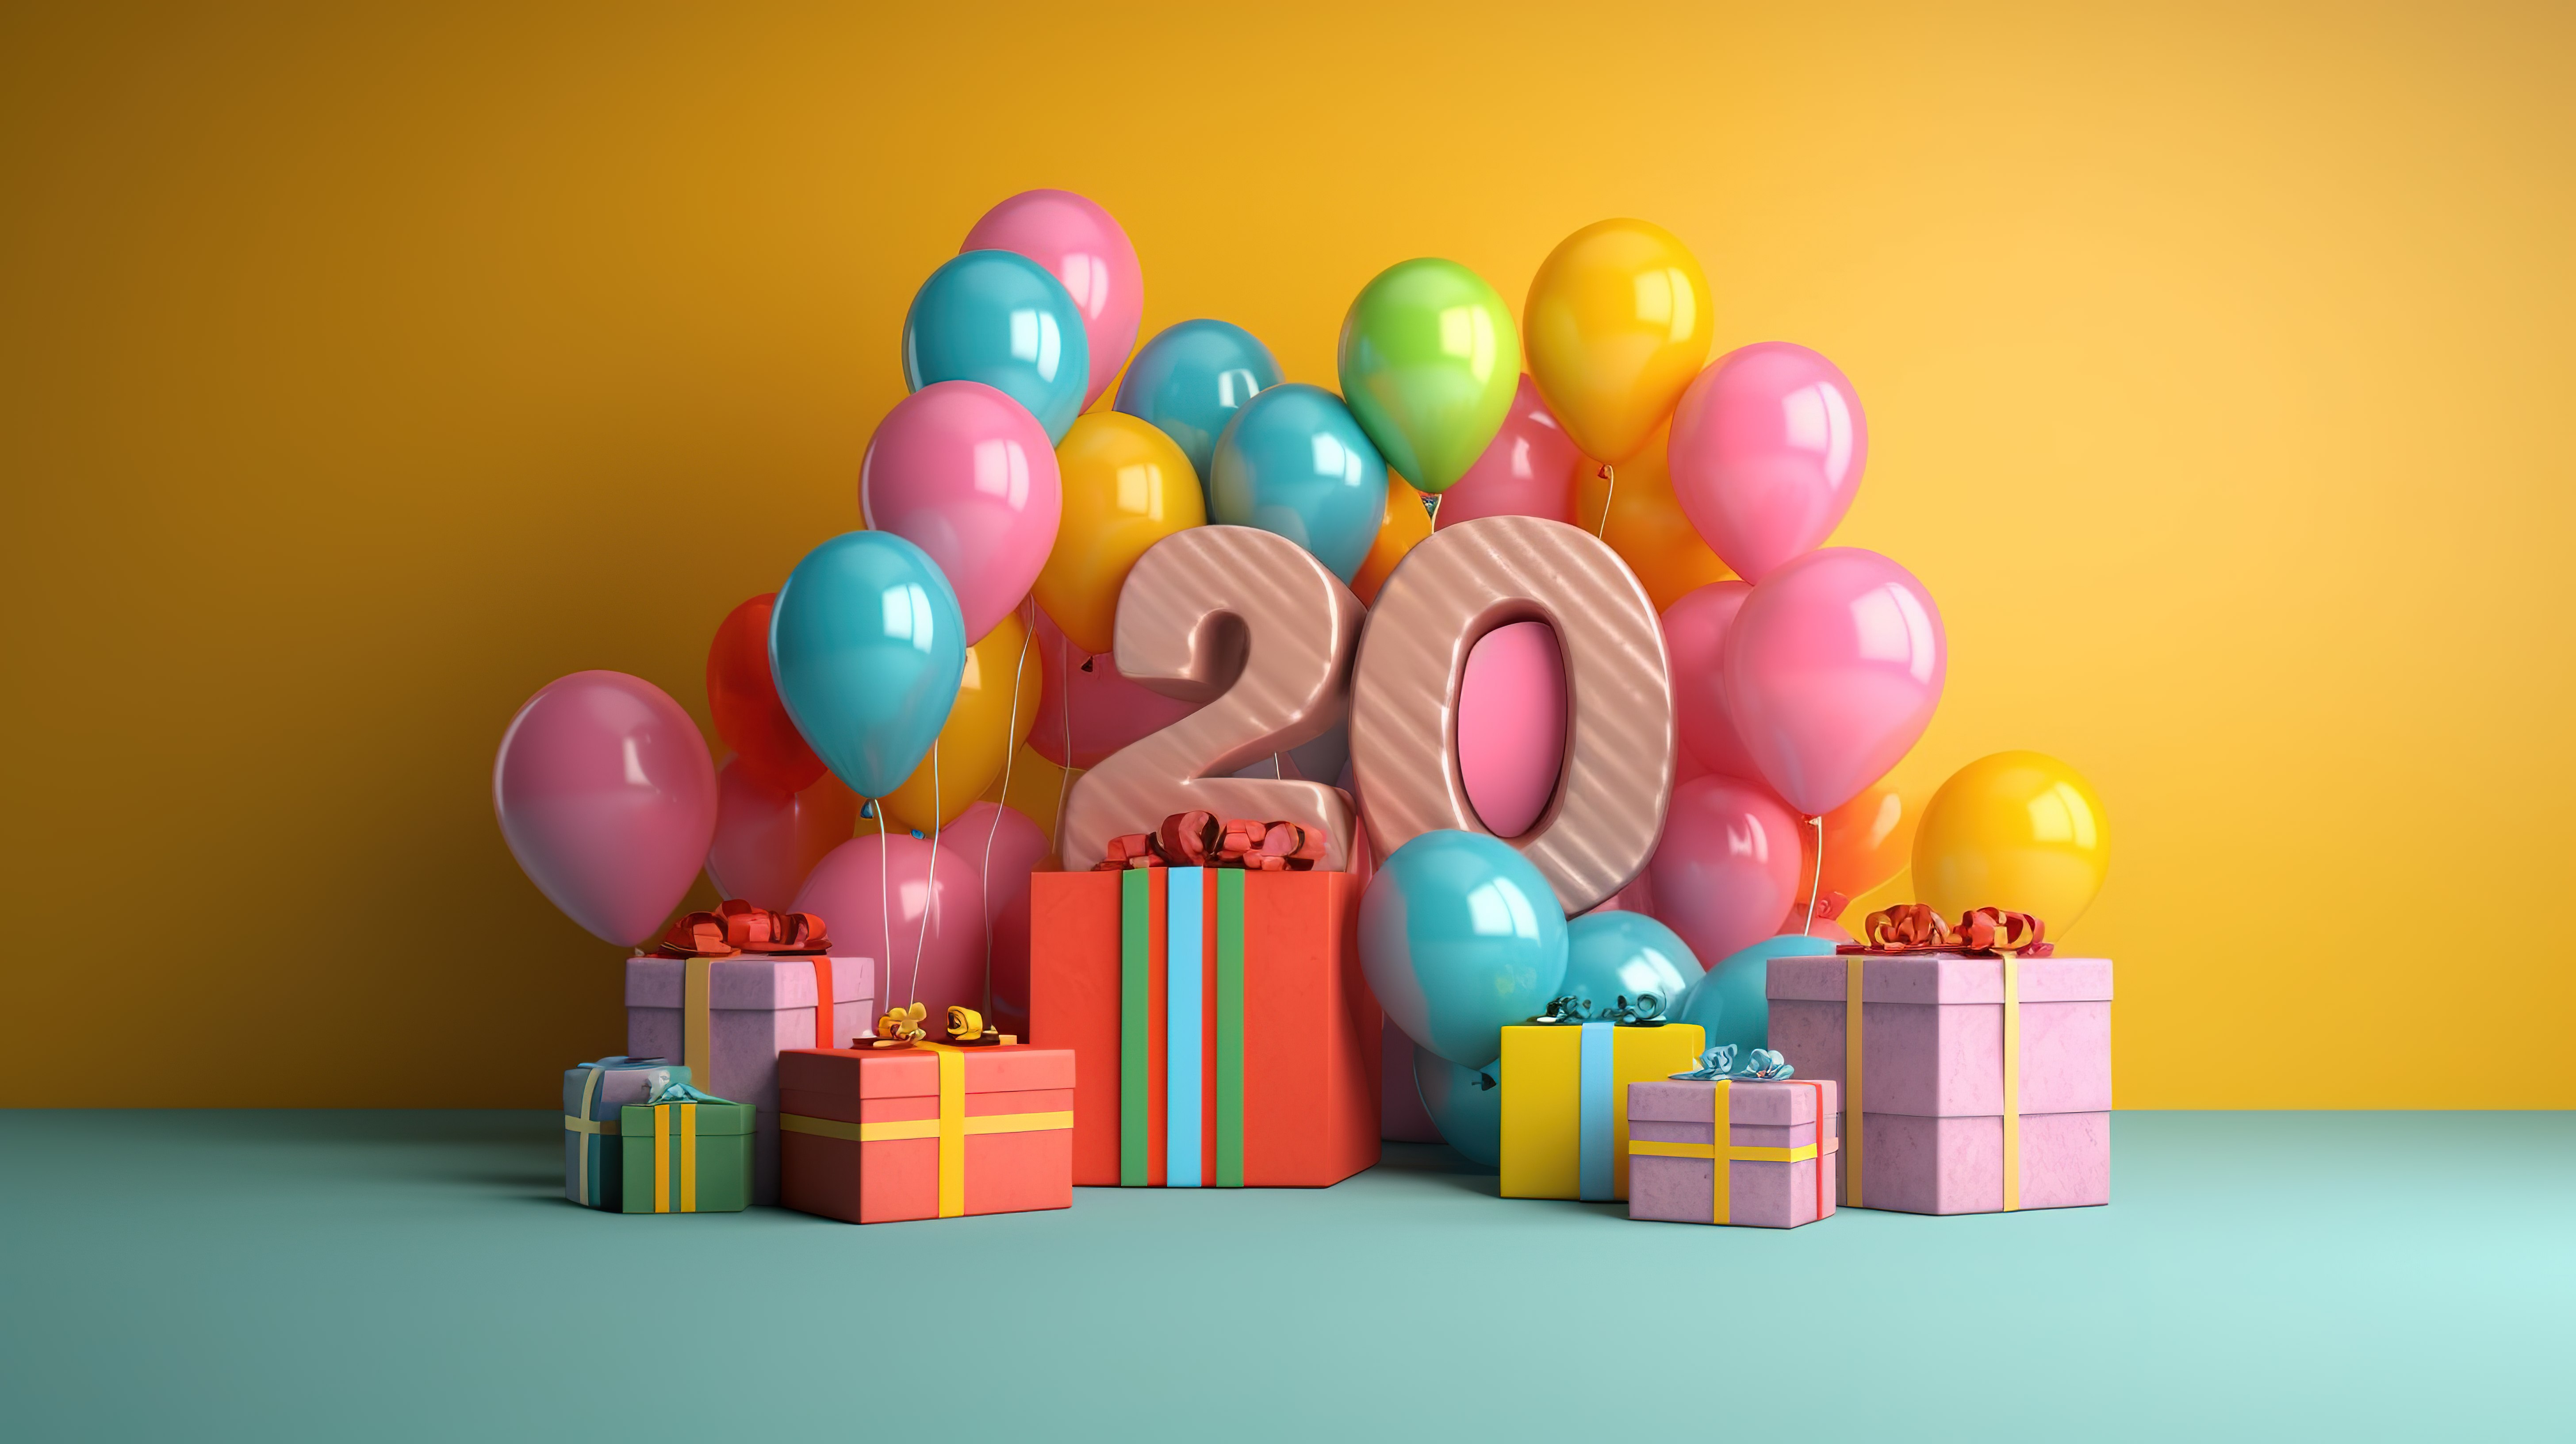 3D 渲染中用气球和礼物布置的快乐生日庆典图片